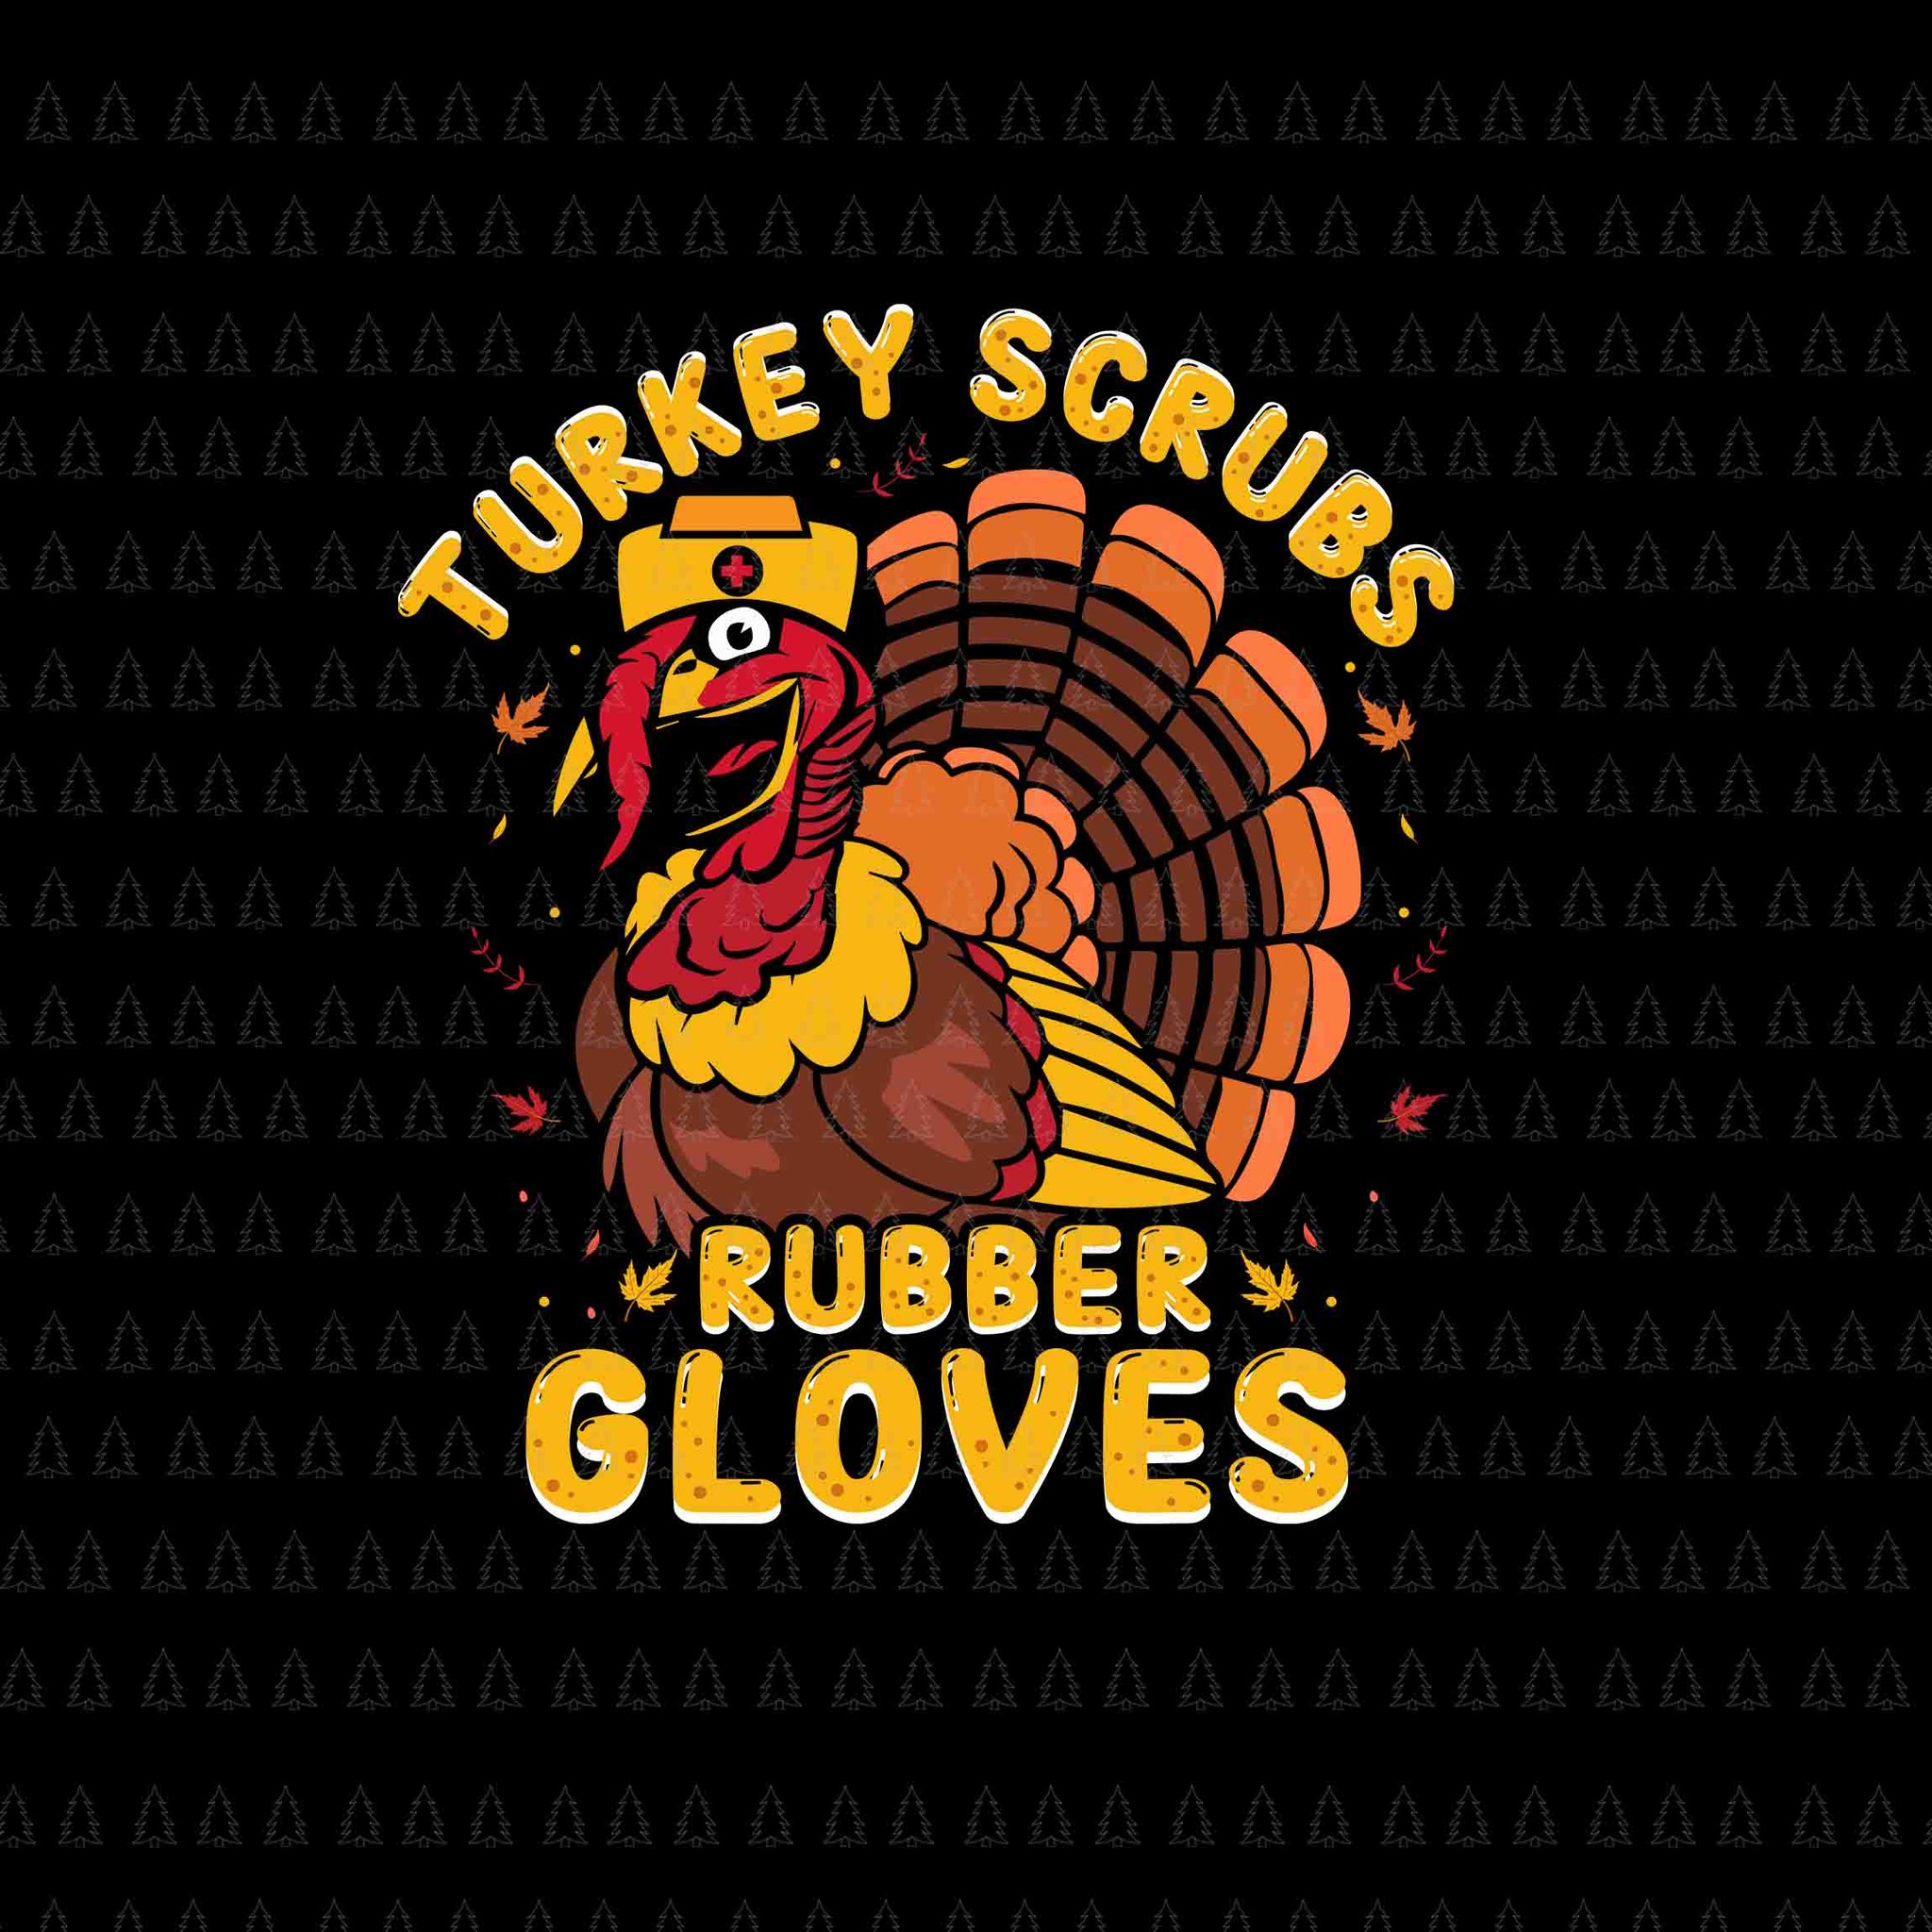 Turkey Scruss Rubber Gloves Svg, Thanksgiving T-rex Svg, Happy Thanksgiving Svg, Turkey Svg, Turkey Day Svg, Thanksgiving Svg, Thanksgiving Turkey Svg